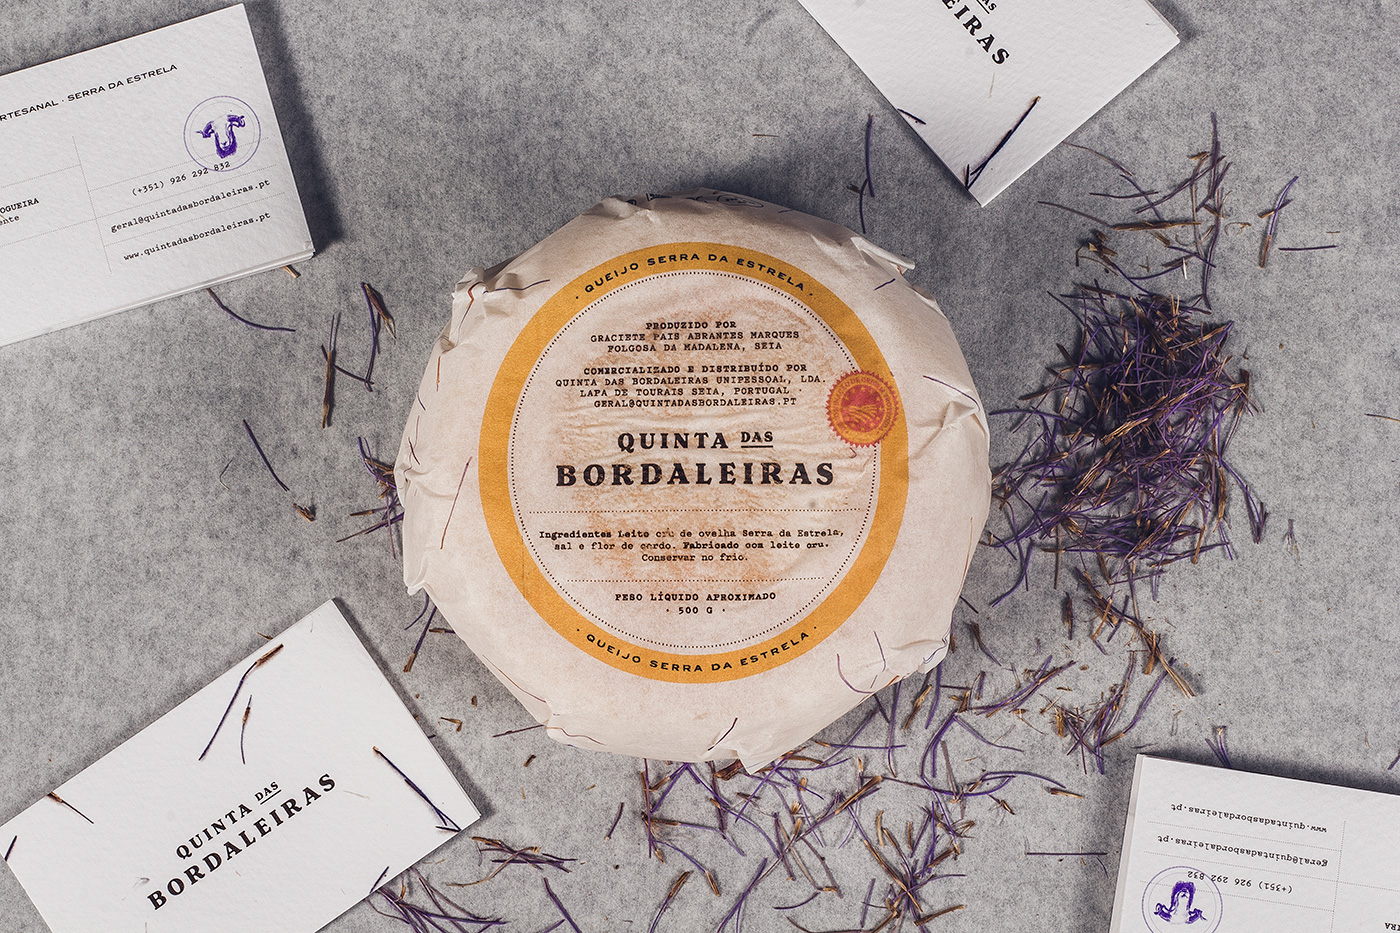 Quinta das Bordaleiras Serra da Estrela Cheese queijo da serra natur logo memories mountain